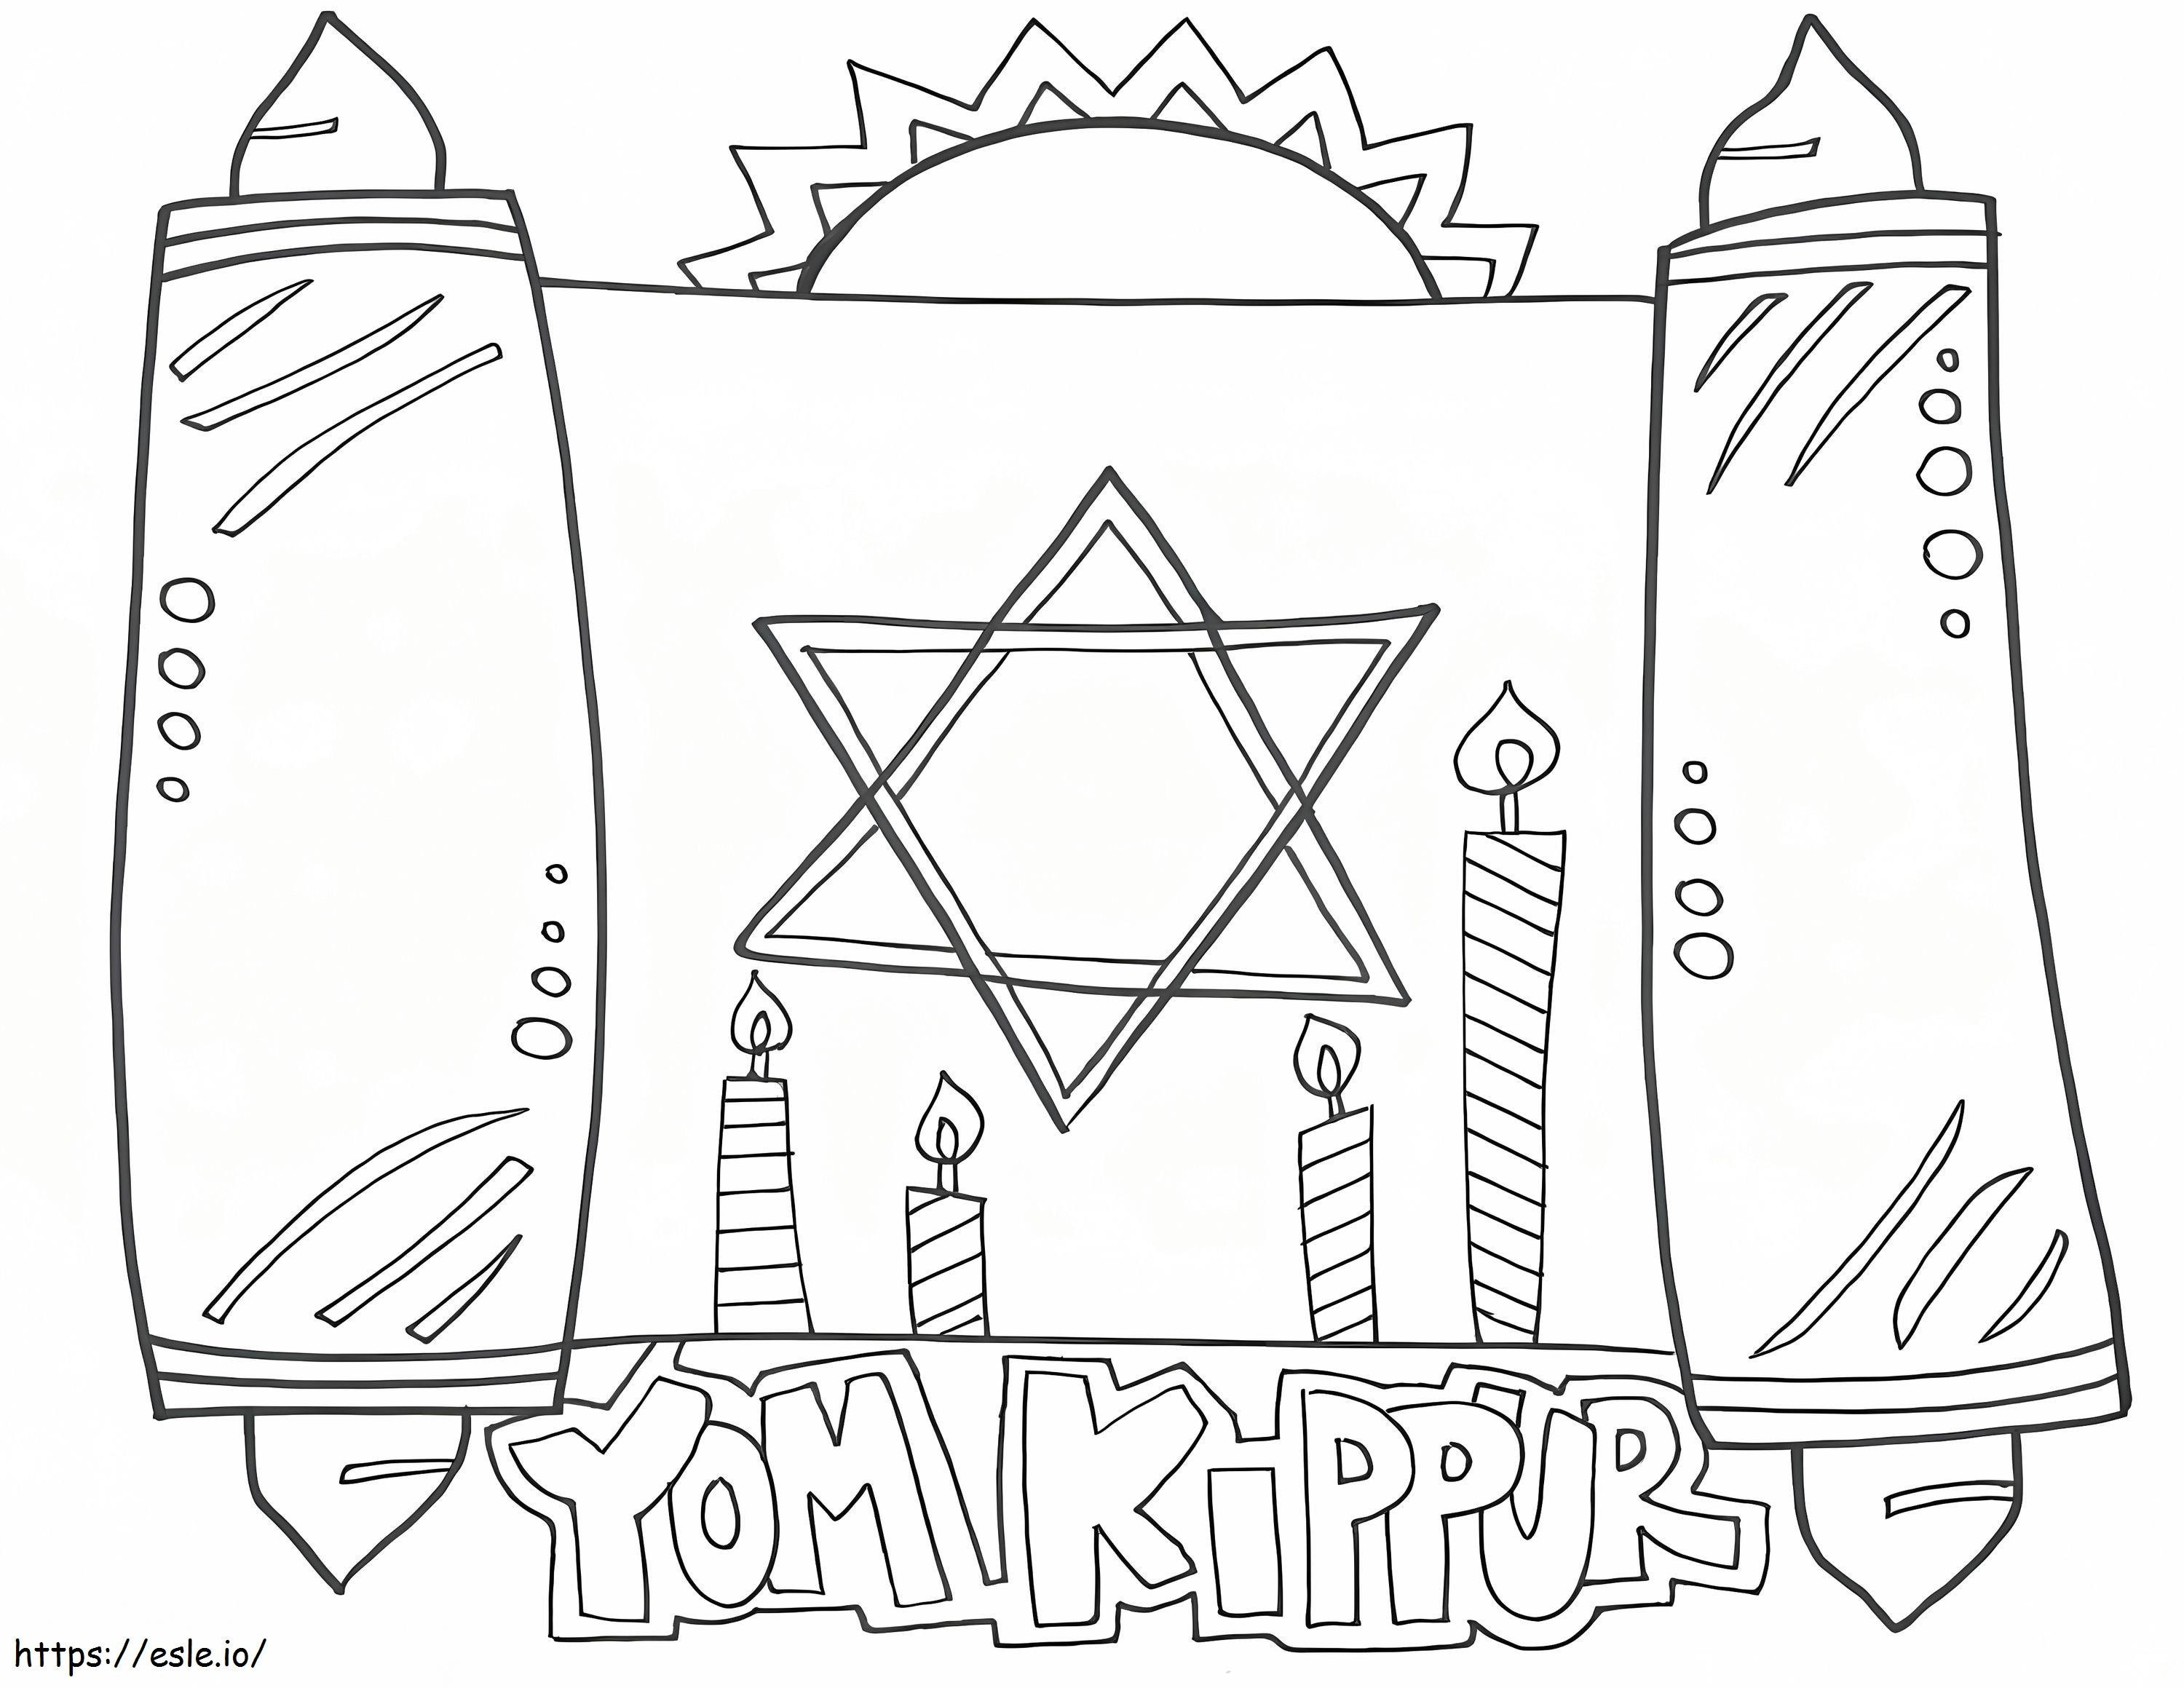 Yom Kippur 2 boyama